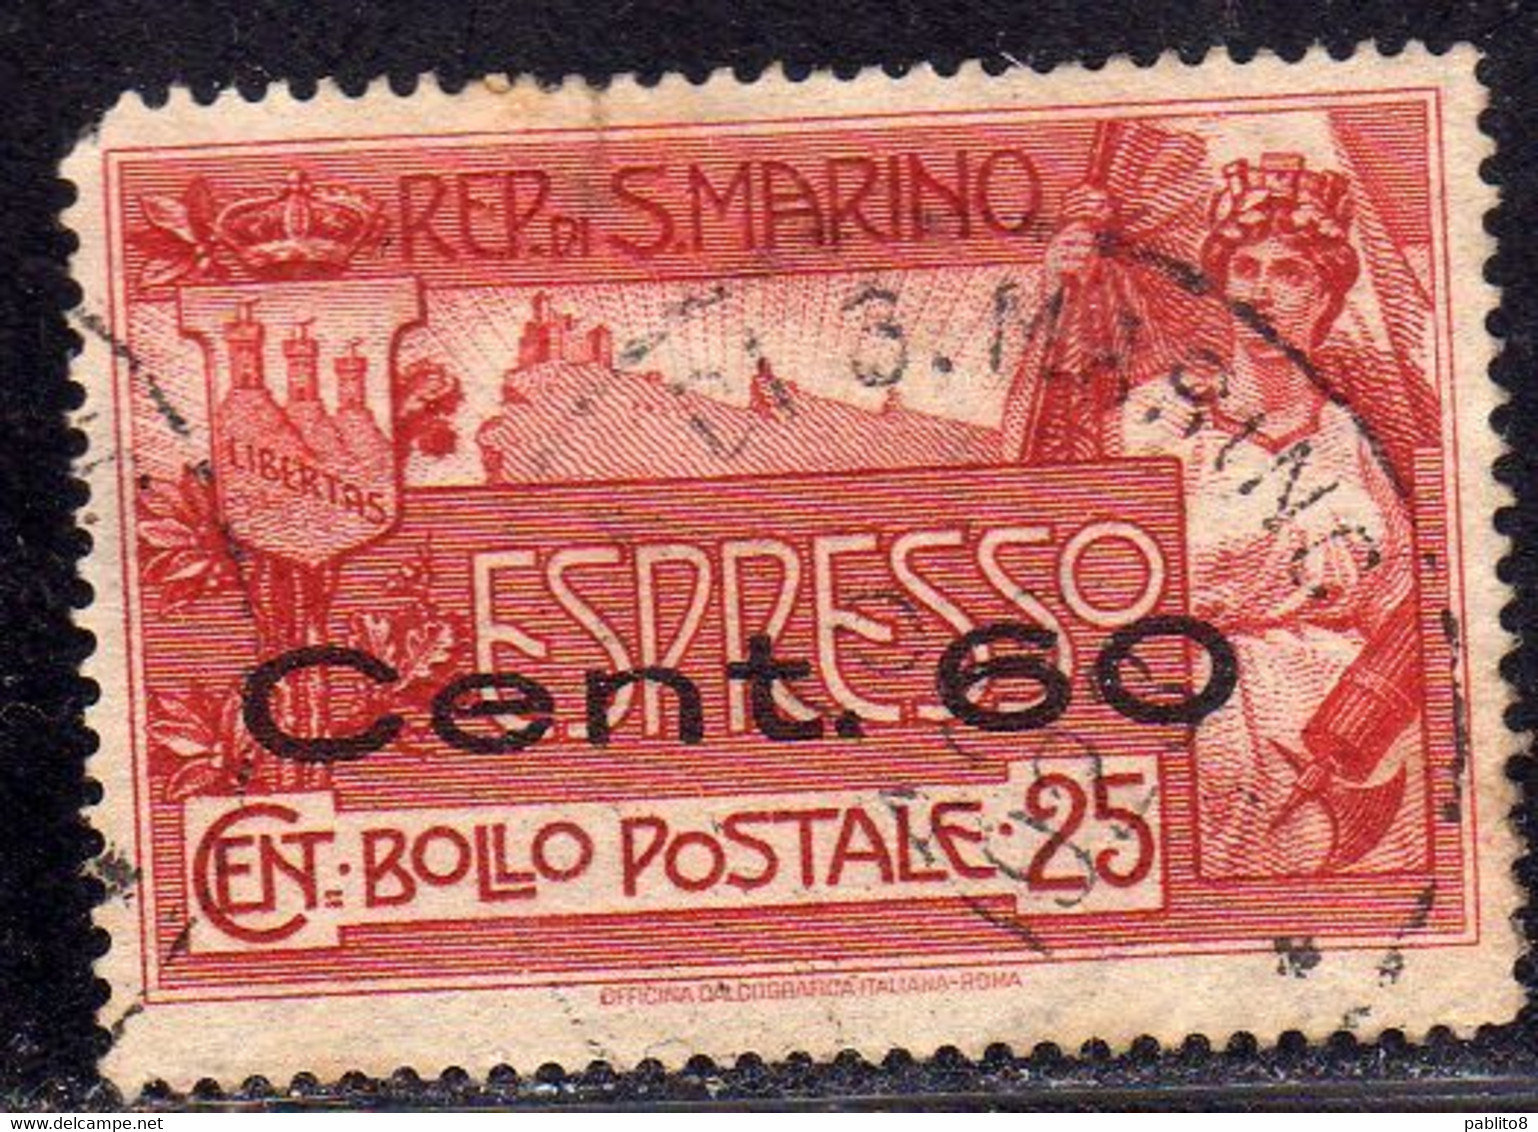 REPUBBLICA DI SAN MARINO 1923 ESPRESSO SPECIAL DELIVERY CENT. 60 SU 25c USATO USED OBLITERE' - Francobolli Per Espresso